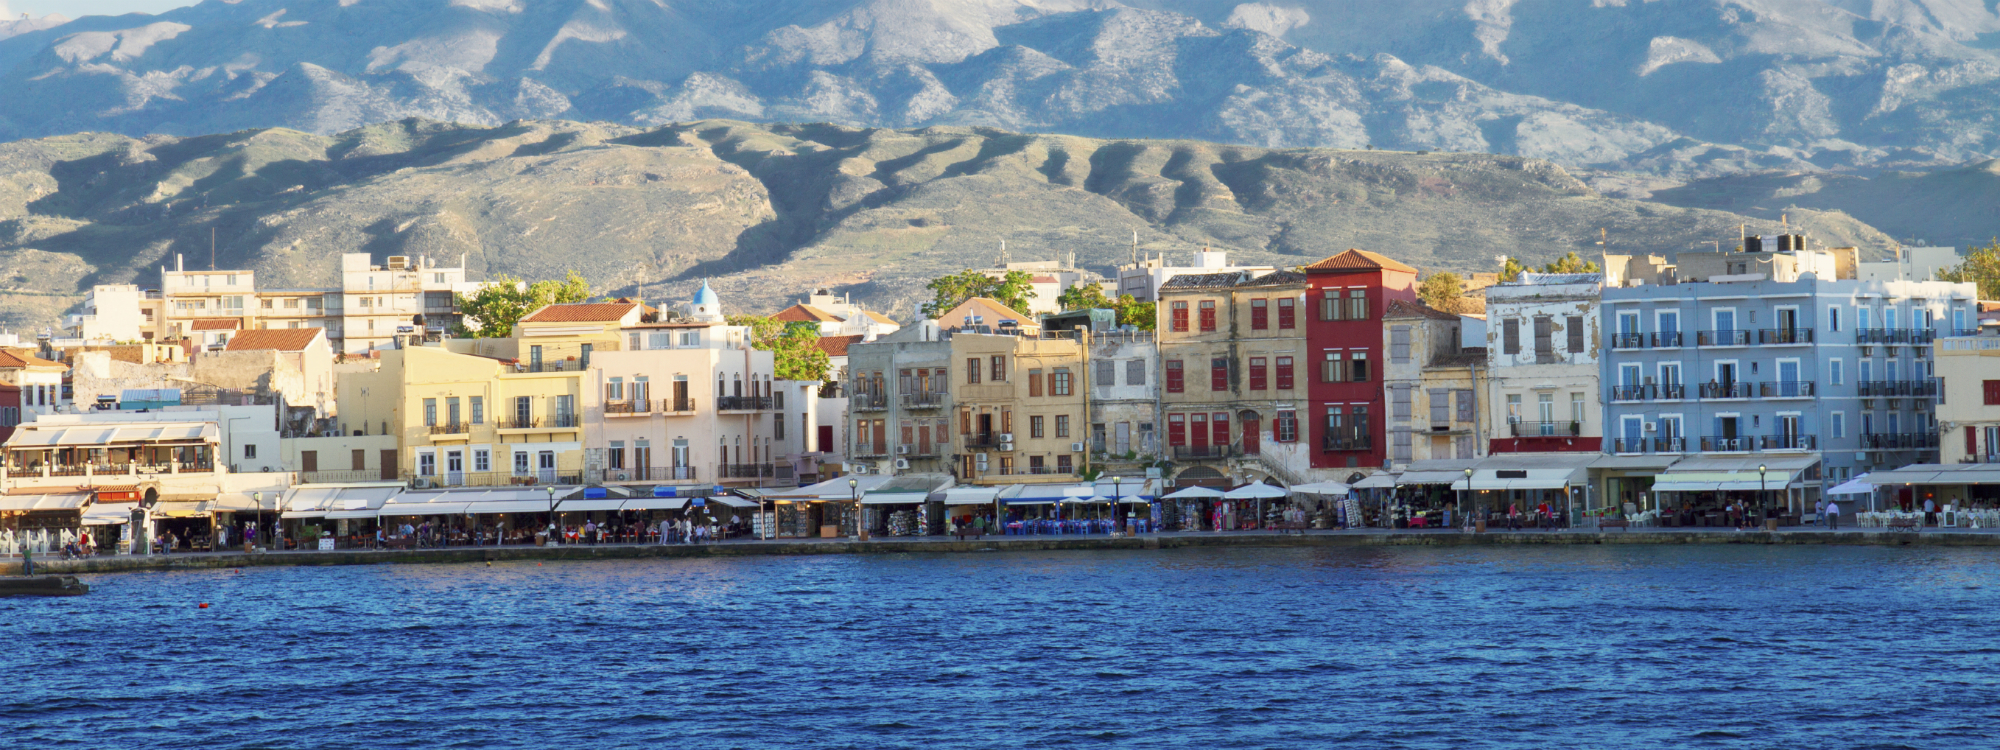 Kreta, Friday vom 2022-07-08 bis 2022-07-15 für 291 EUR p.P.